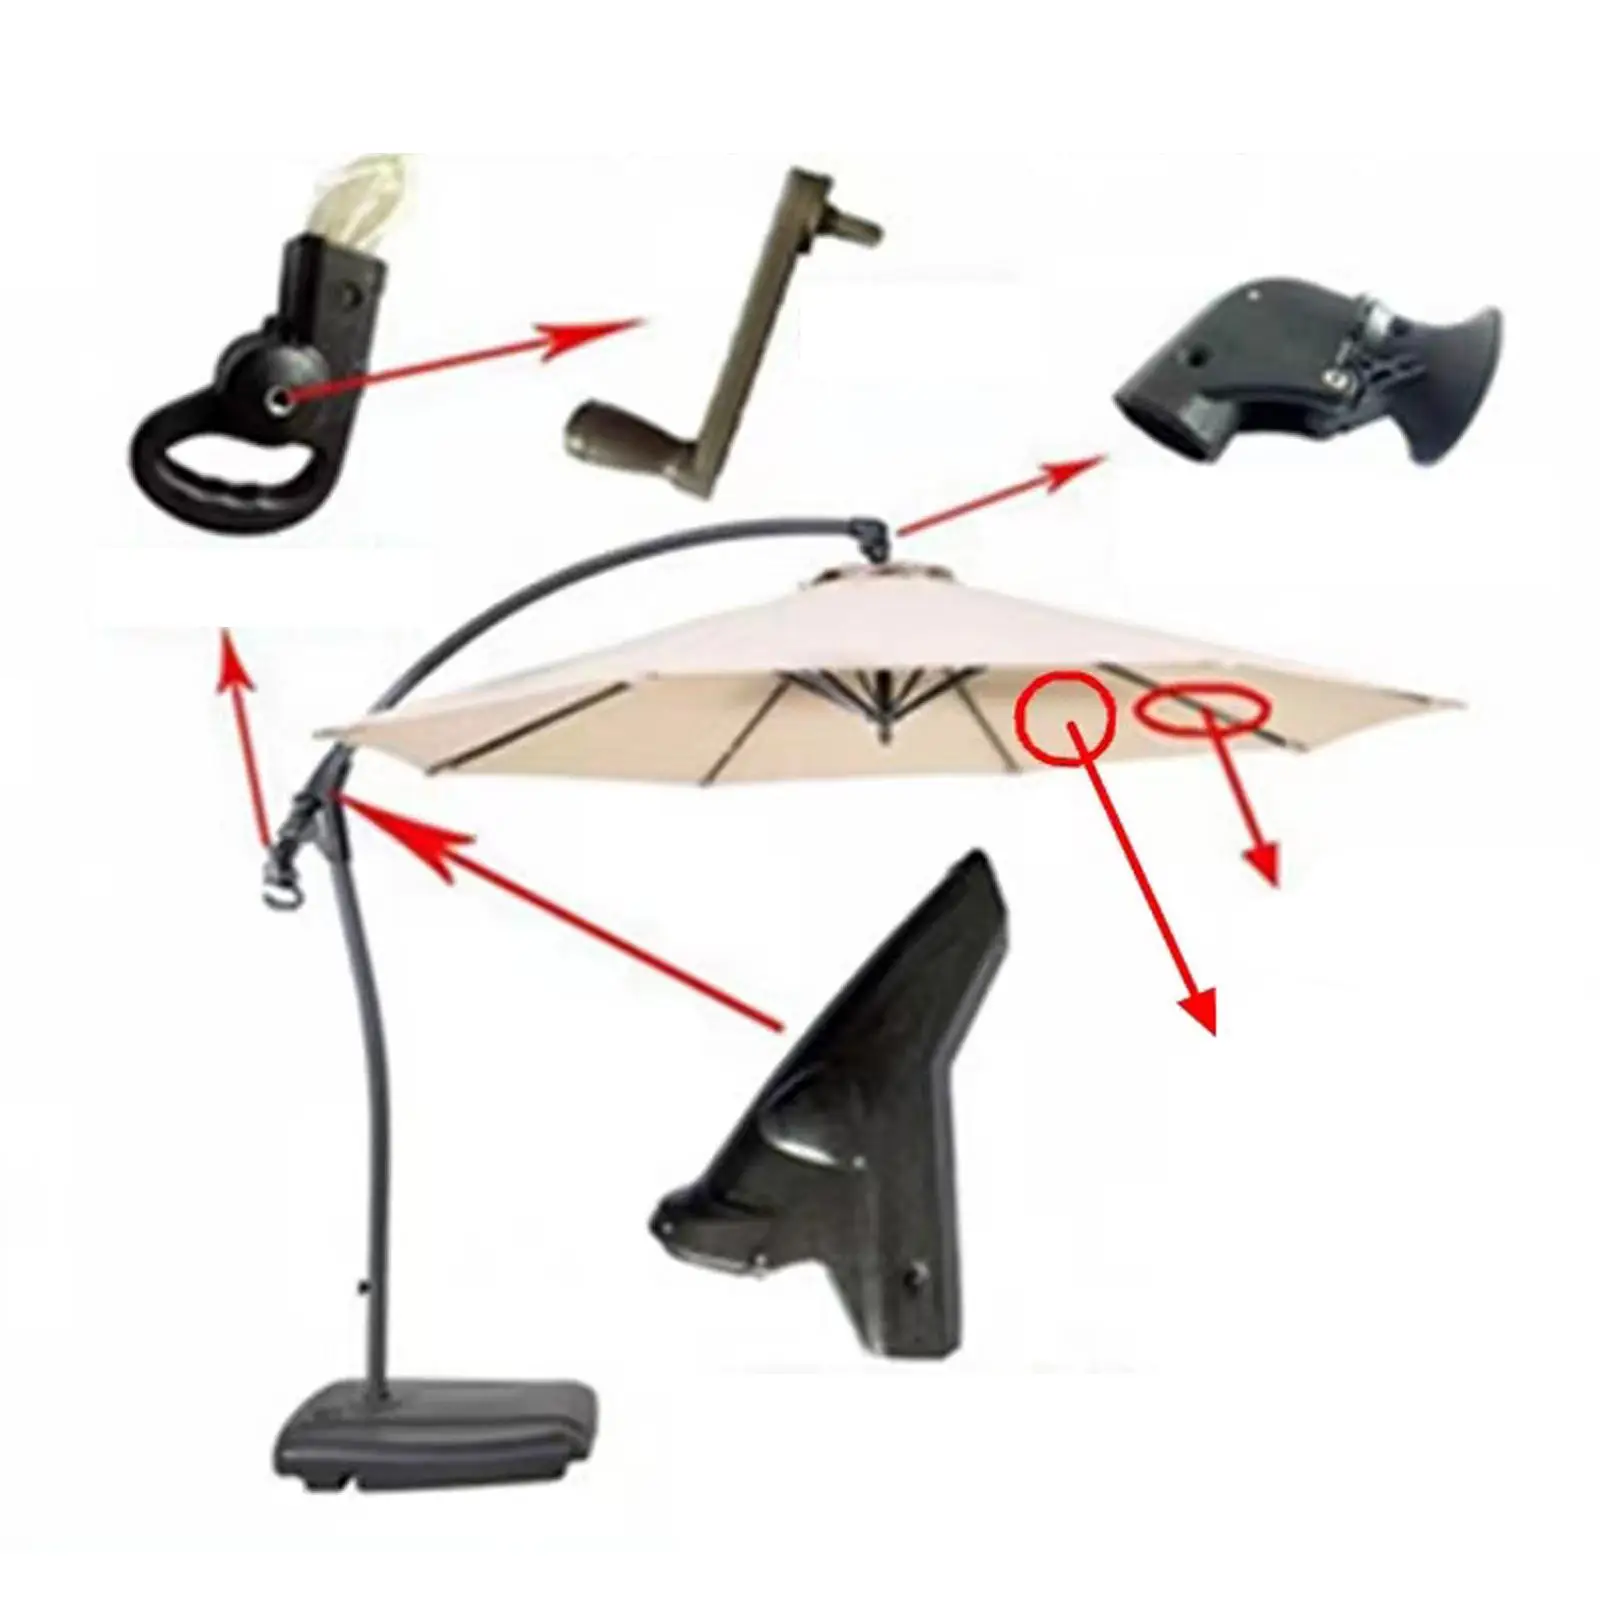 Patio Umbrella Accessories Parasol Crank Handle Leisure Adjustable Deck Umbrella